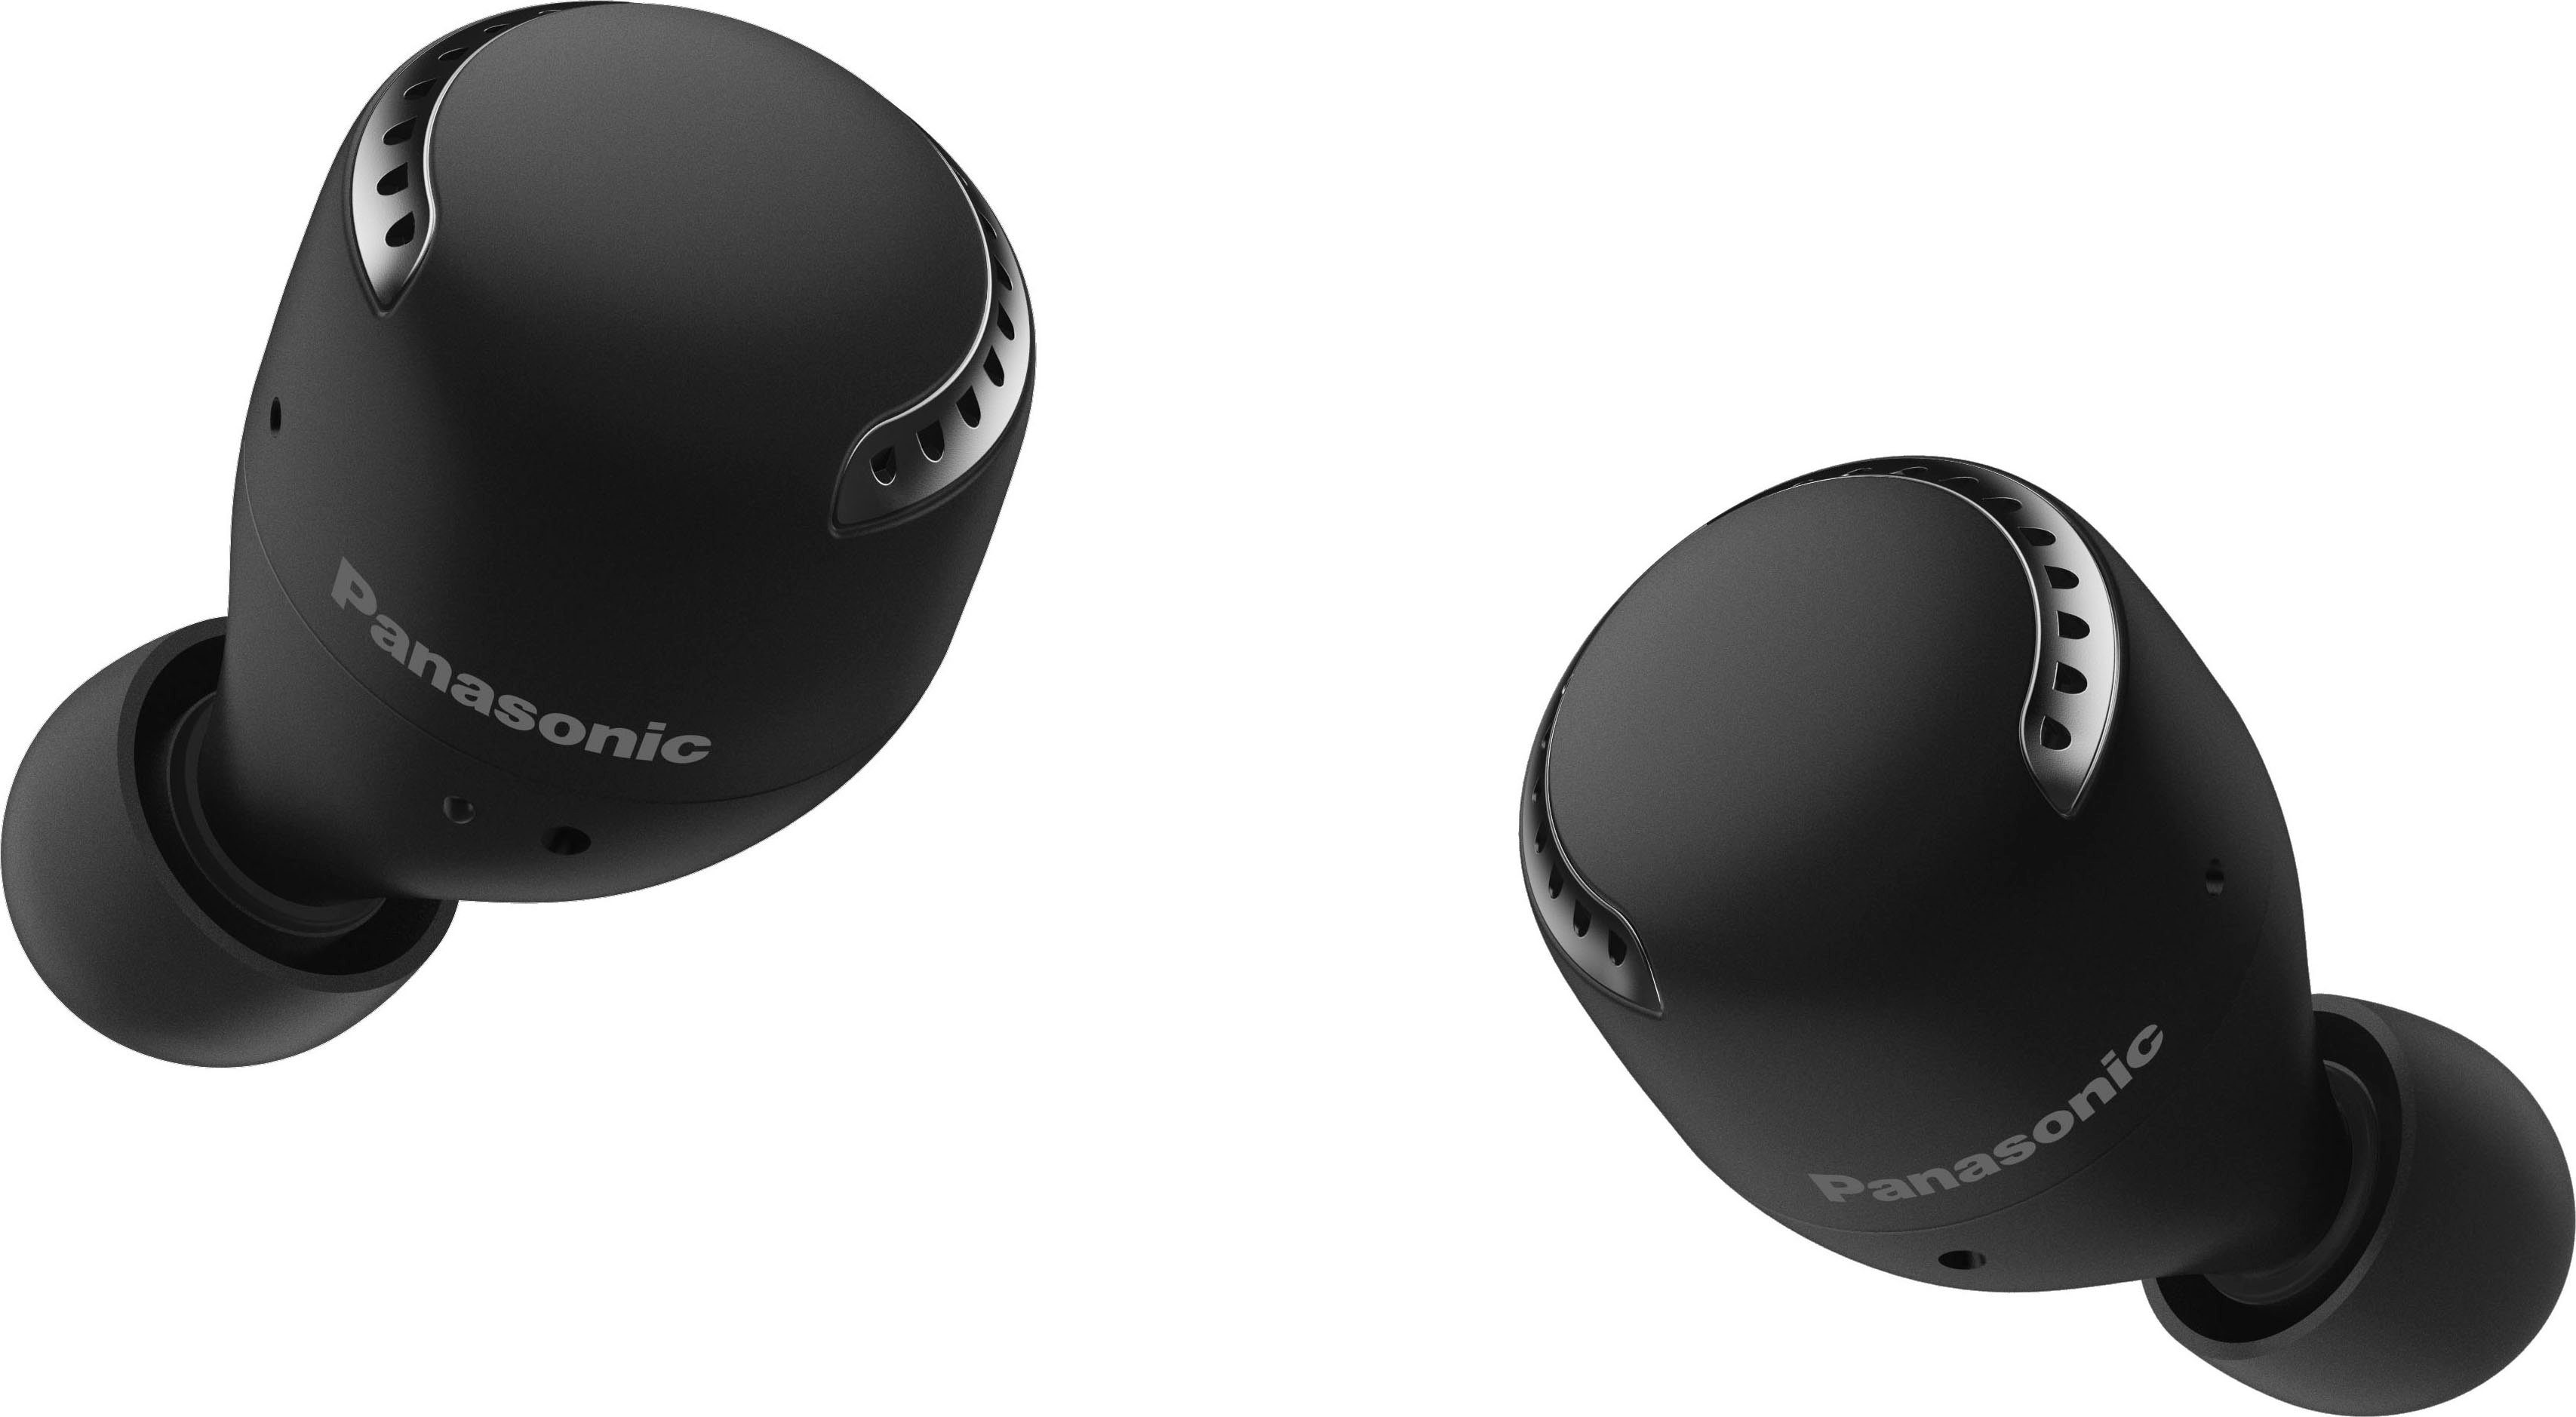 RZ-S500WE schwarz Sprachsteuerung, Wireless, In-Ear-Kopfhörer (Noise-Cancelling, wireless True Bluetooth) Panasonic